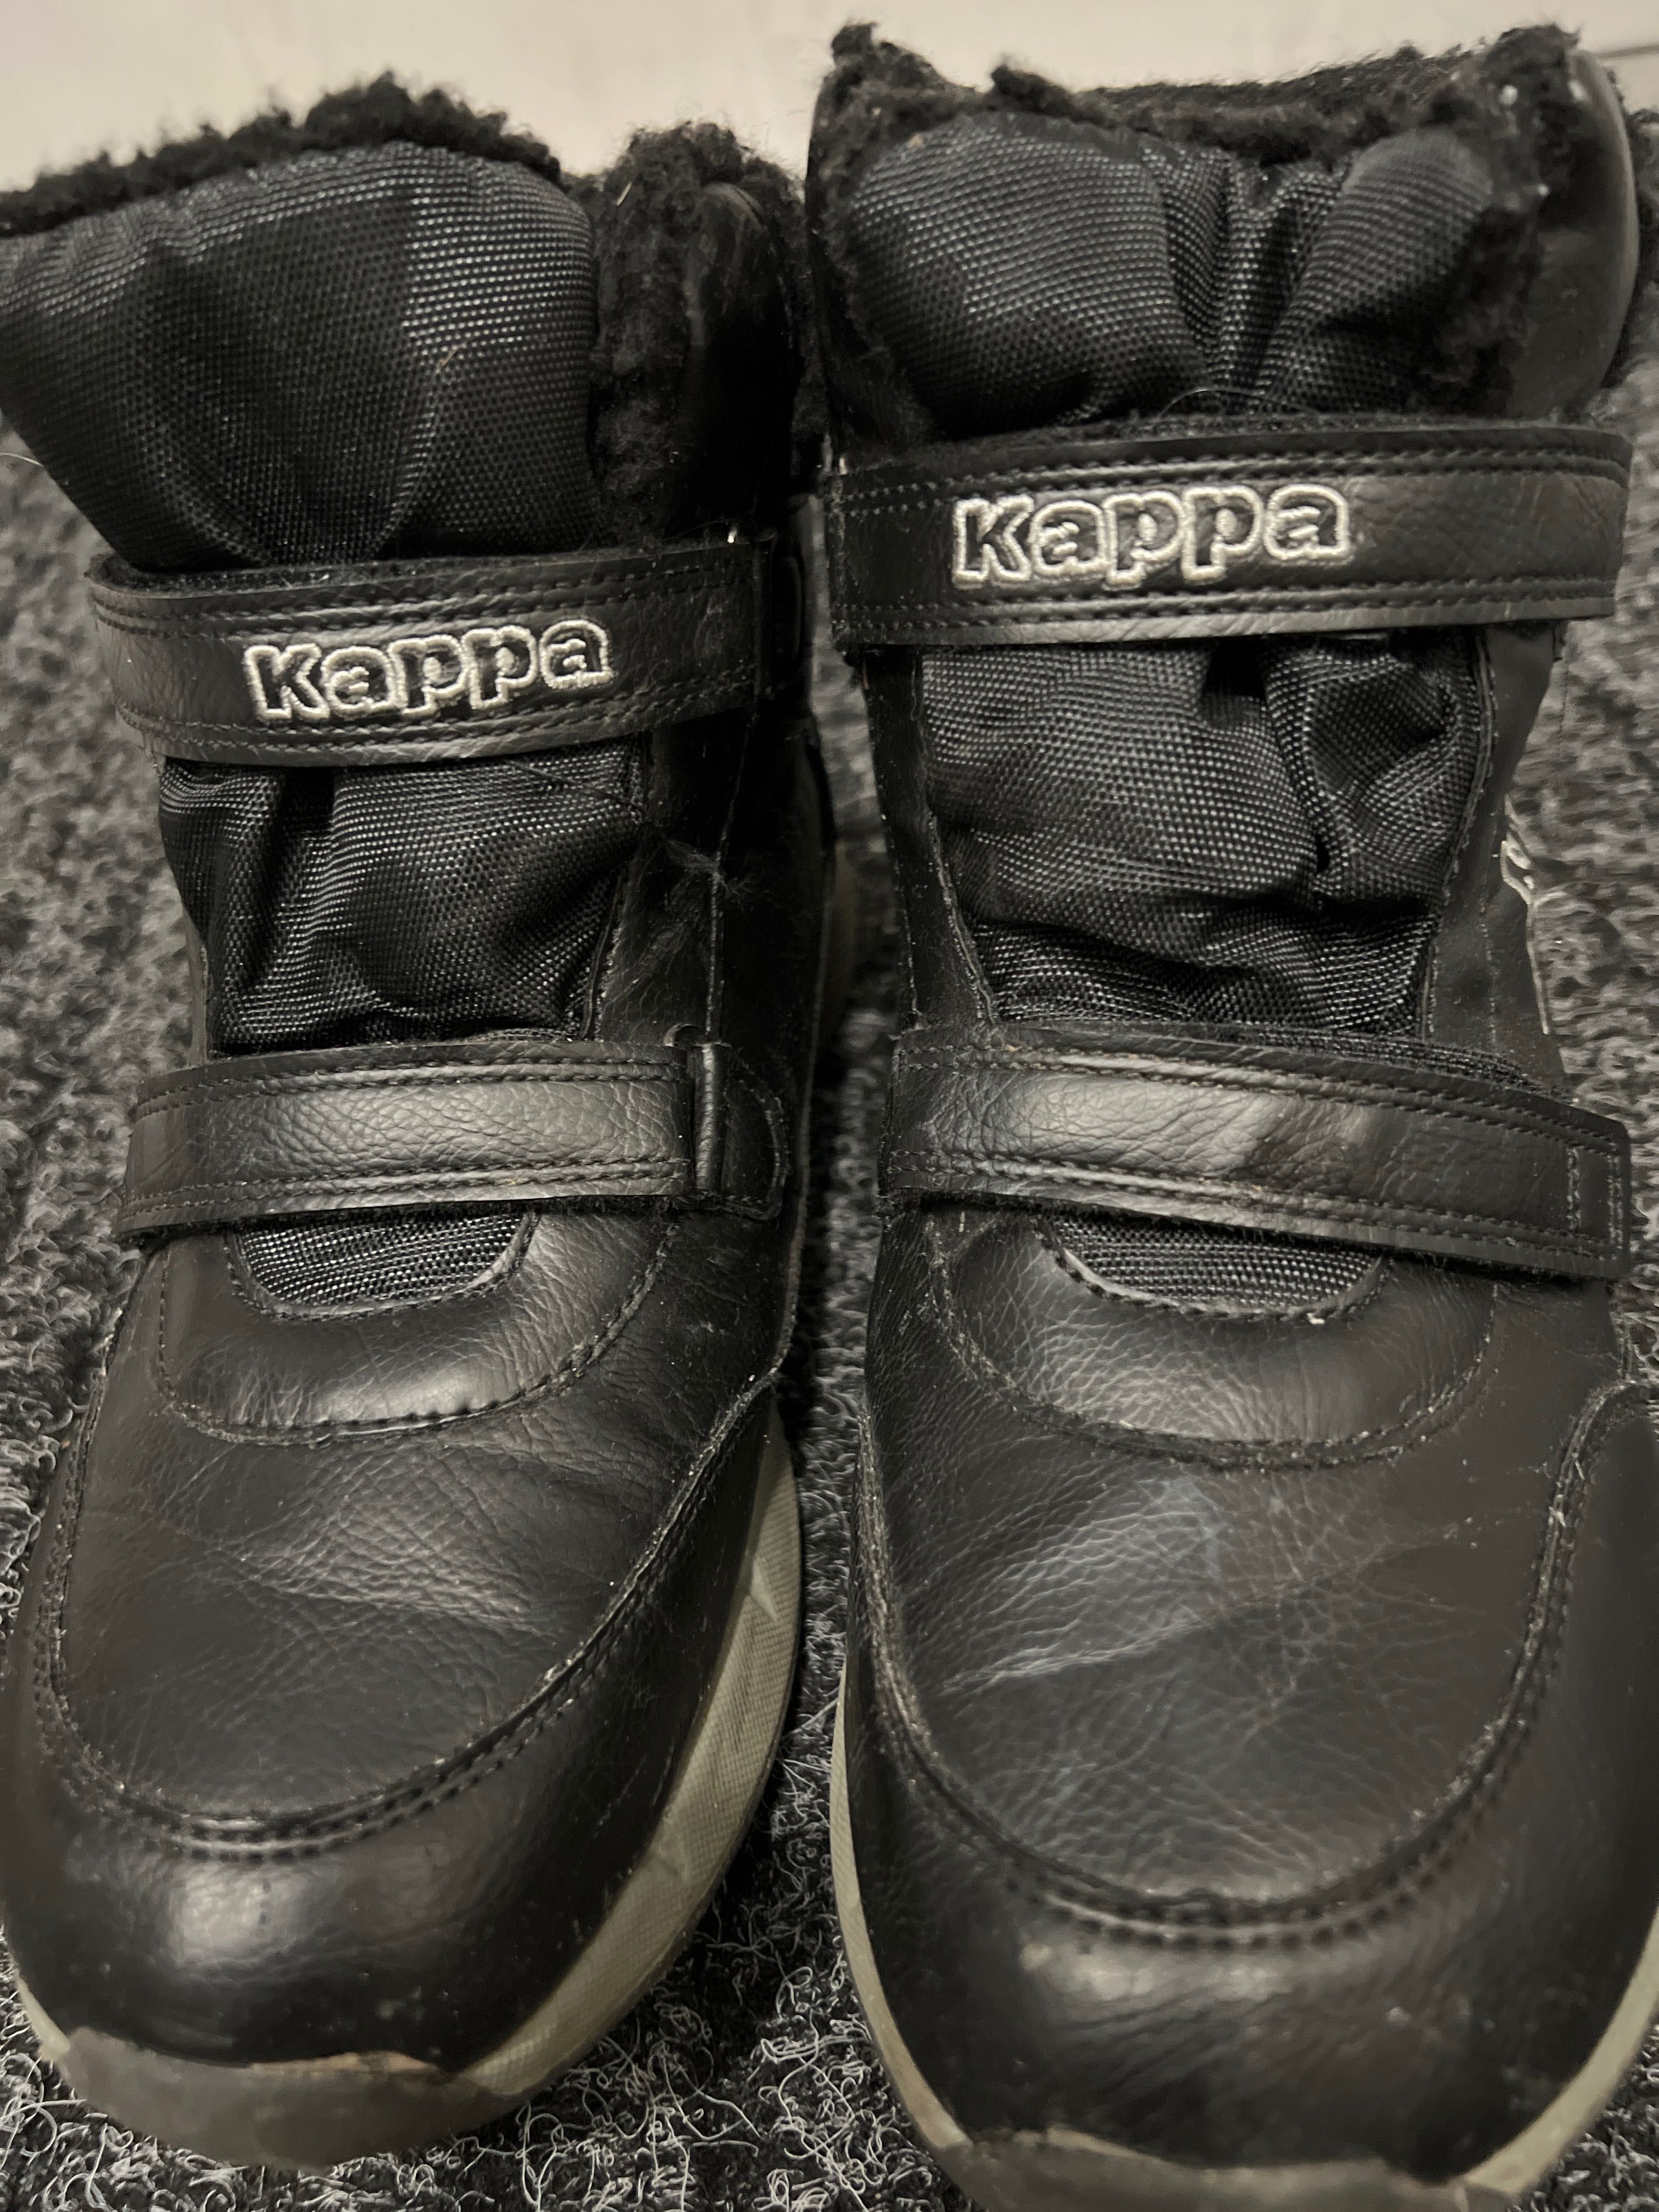 Buty śniegowce czarne, zapinana na rzep, roz.39